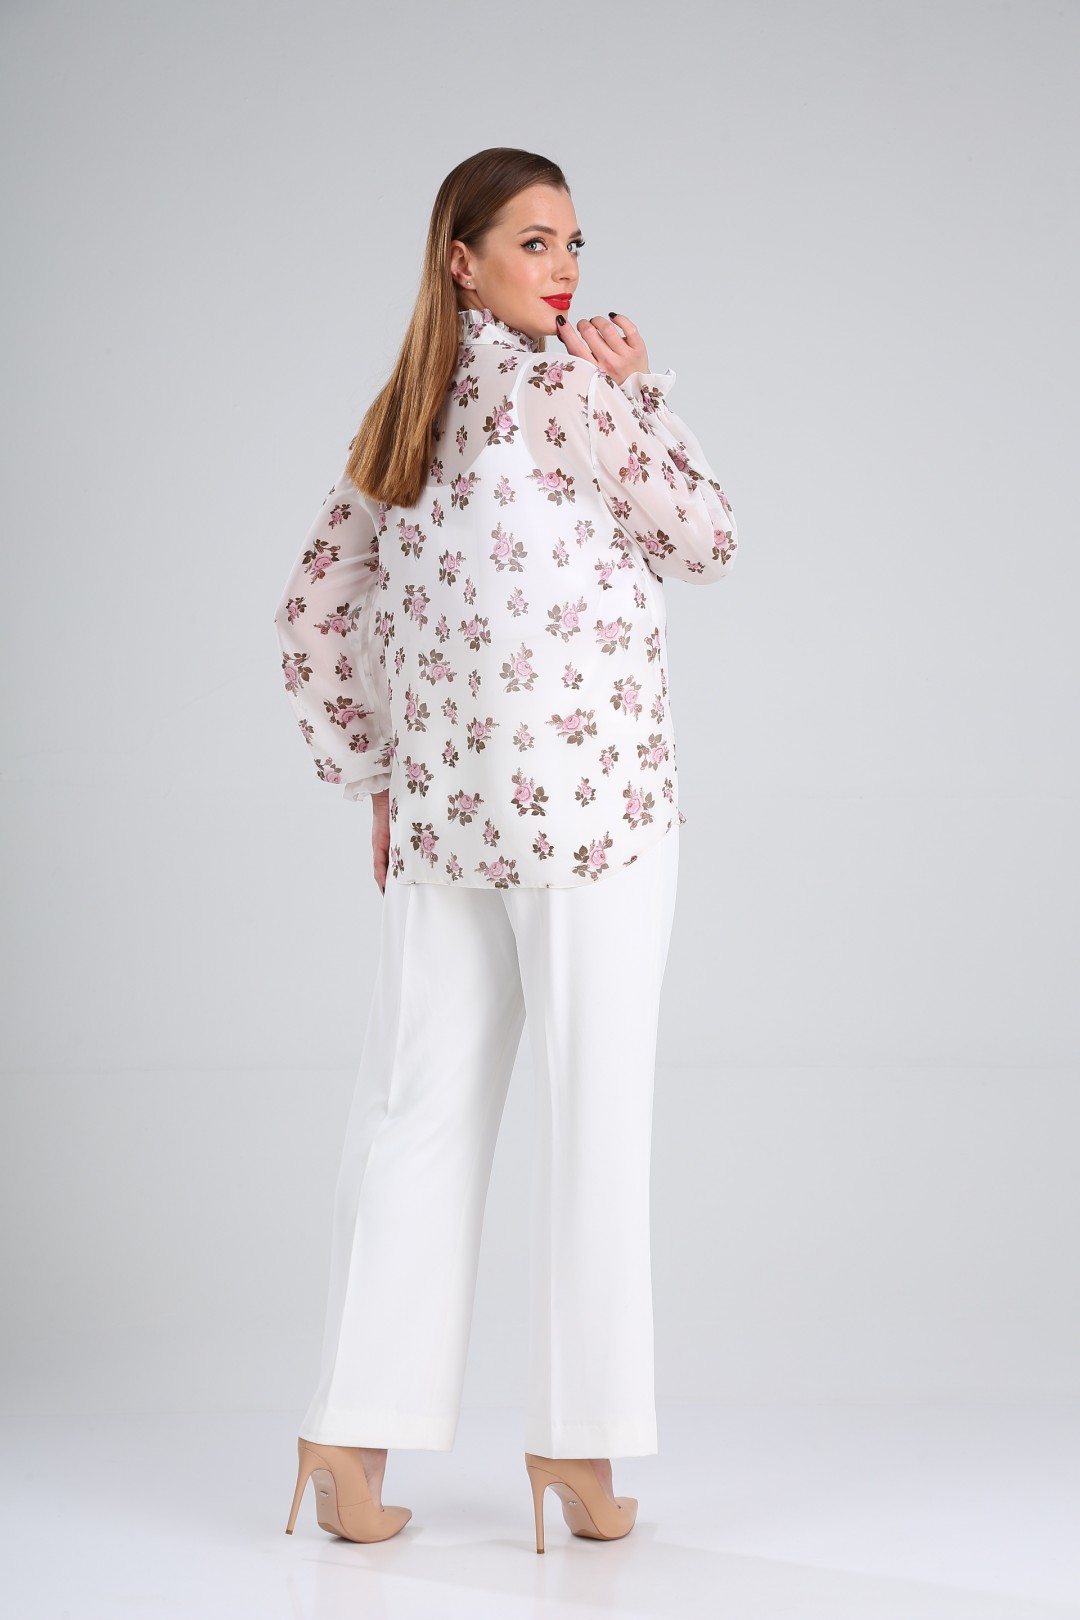 Блузка LadyLine 503 белая в розовые цветы